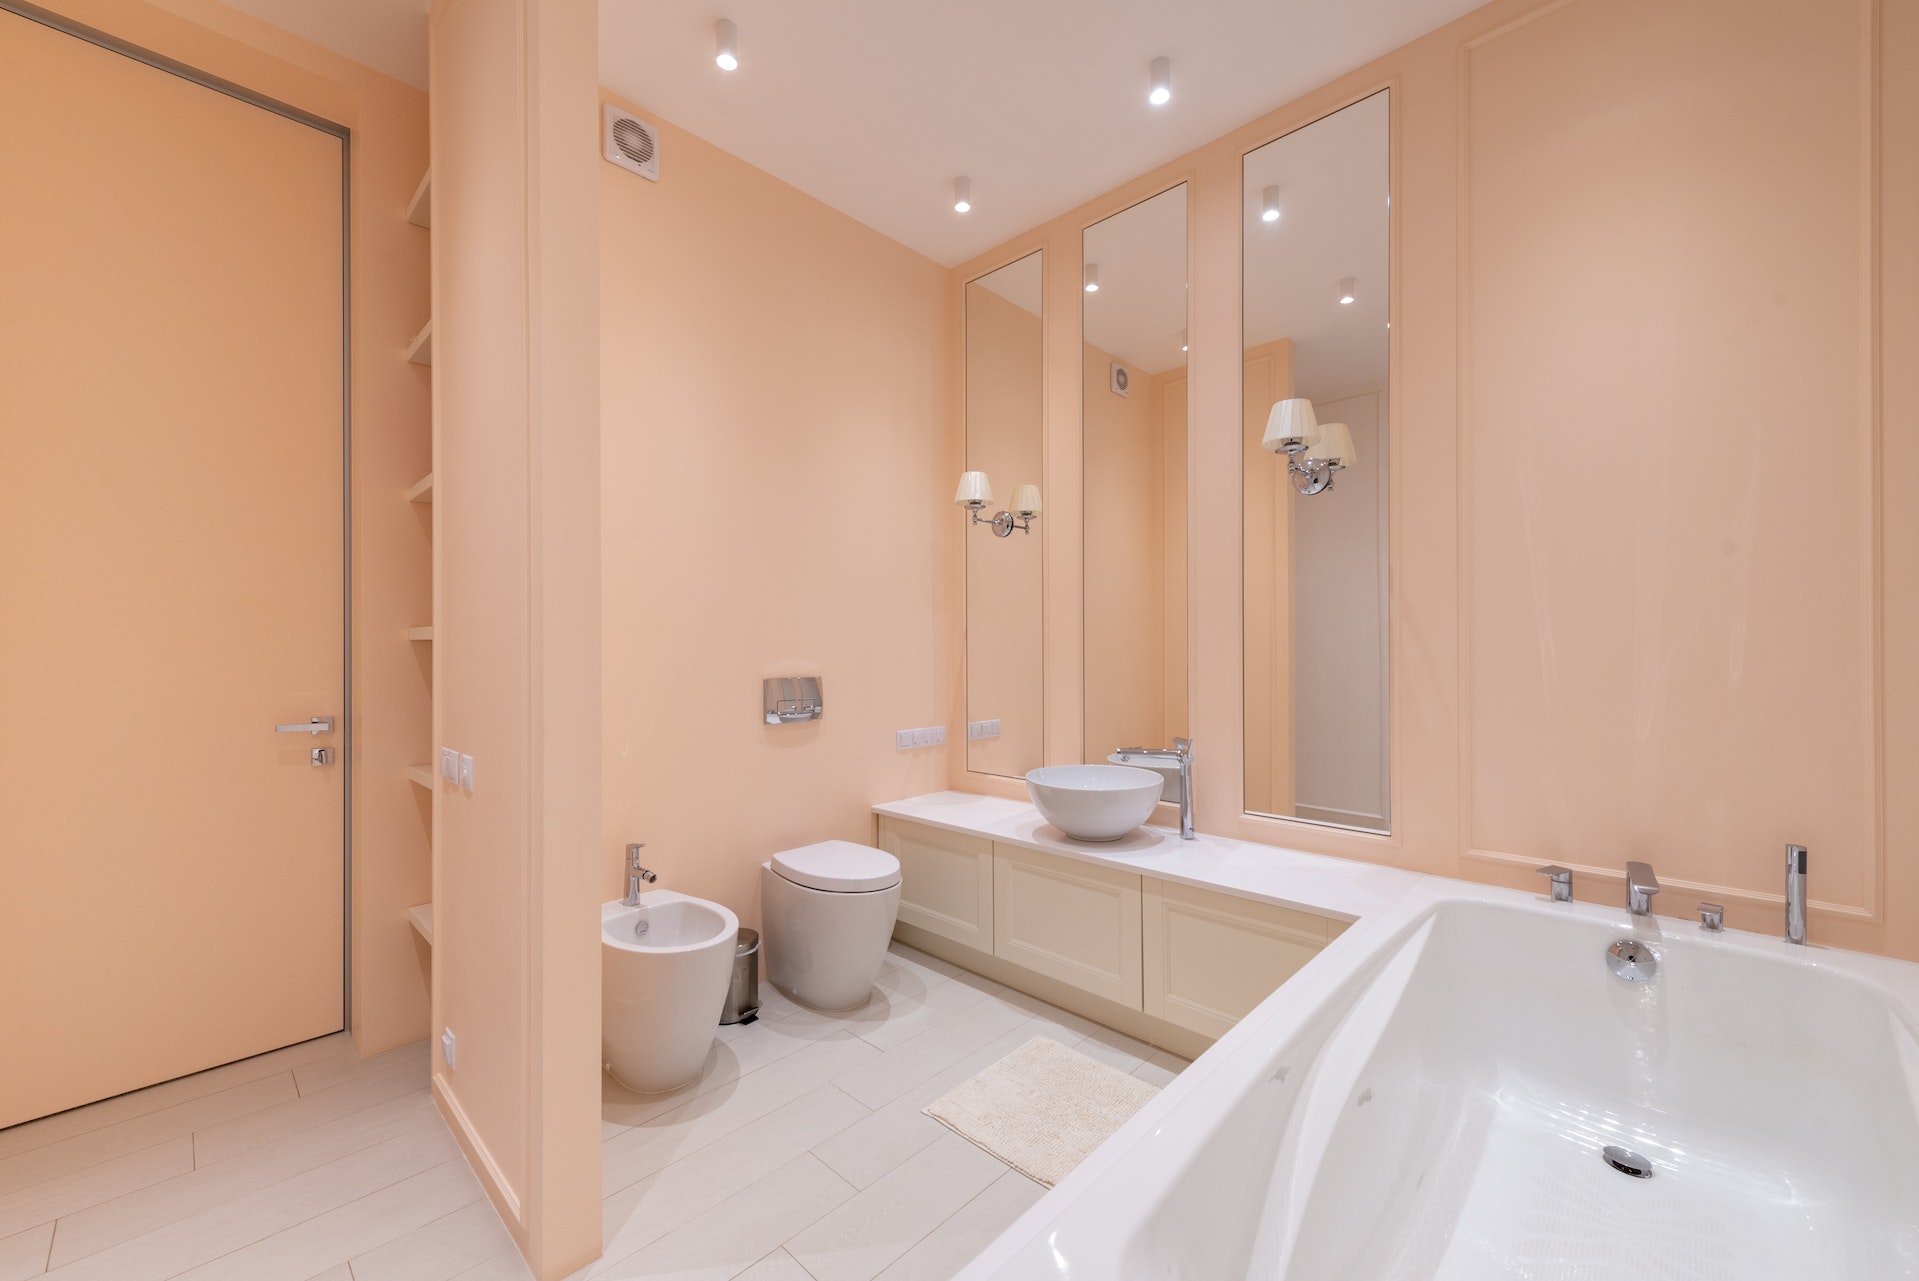 30 idées pour décorer vos WC  Deco salle de bain, Design de wc